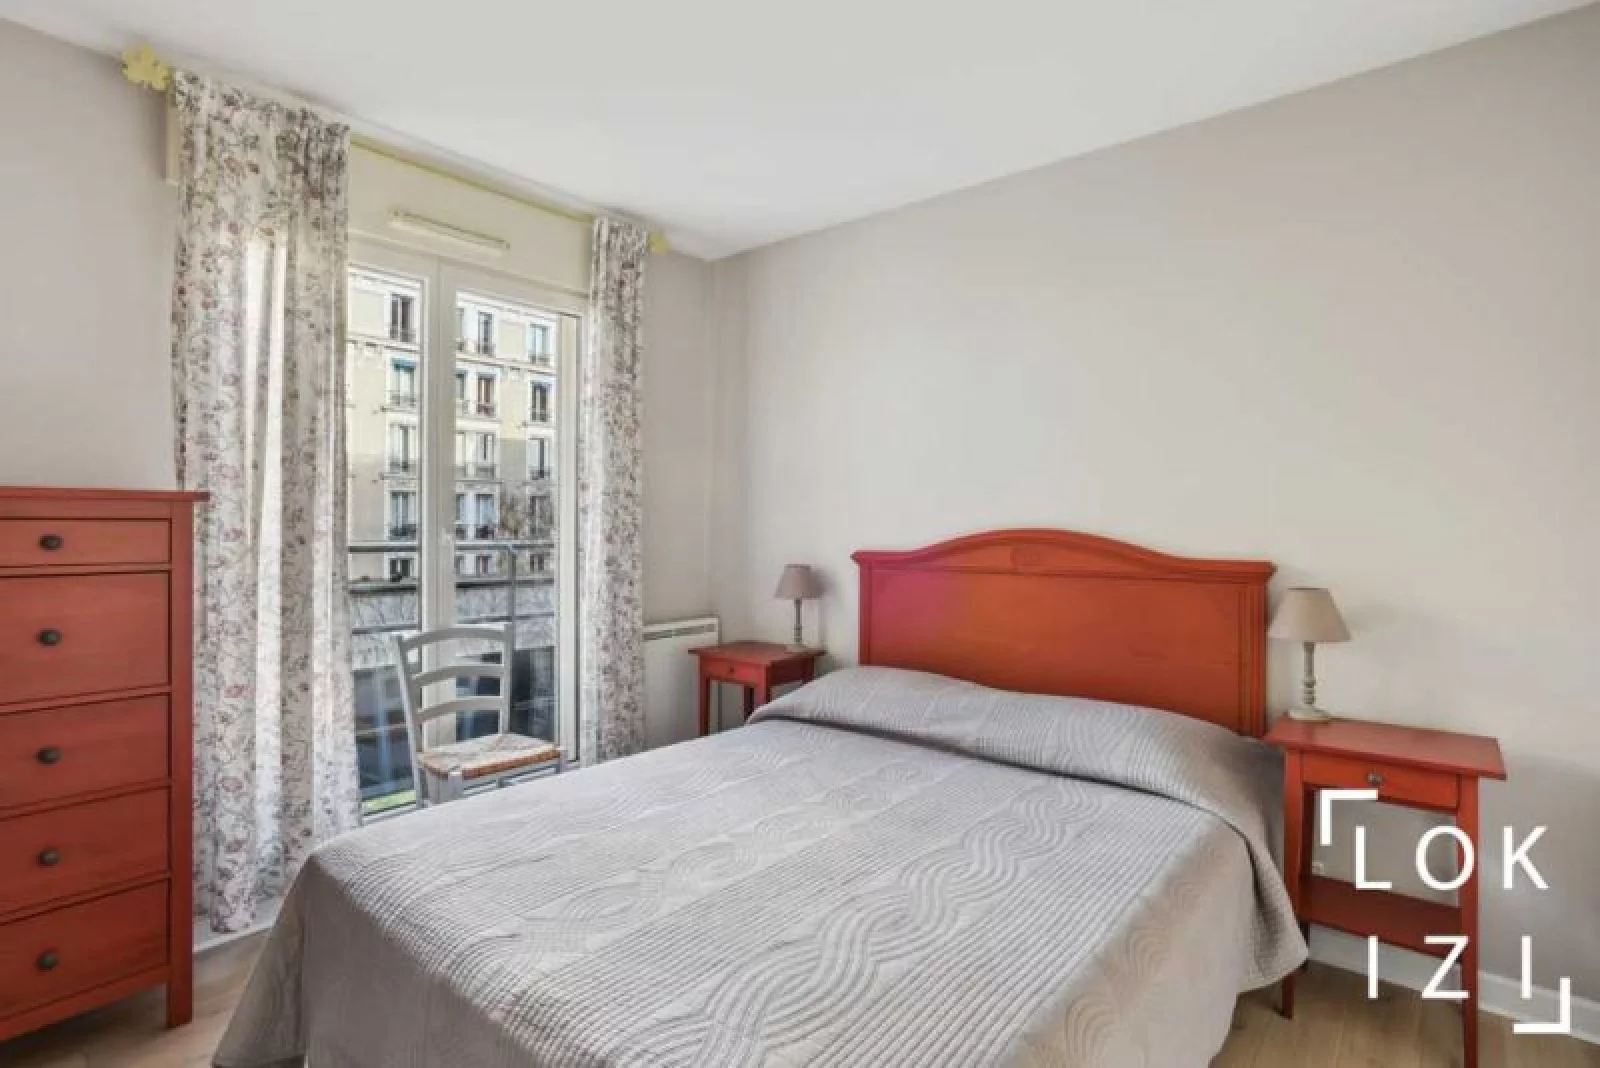 Location appartement meublé 2 pièces 47m² (Paris 11)